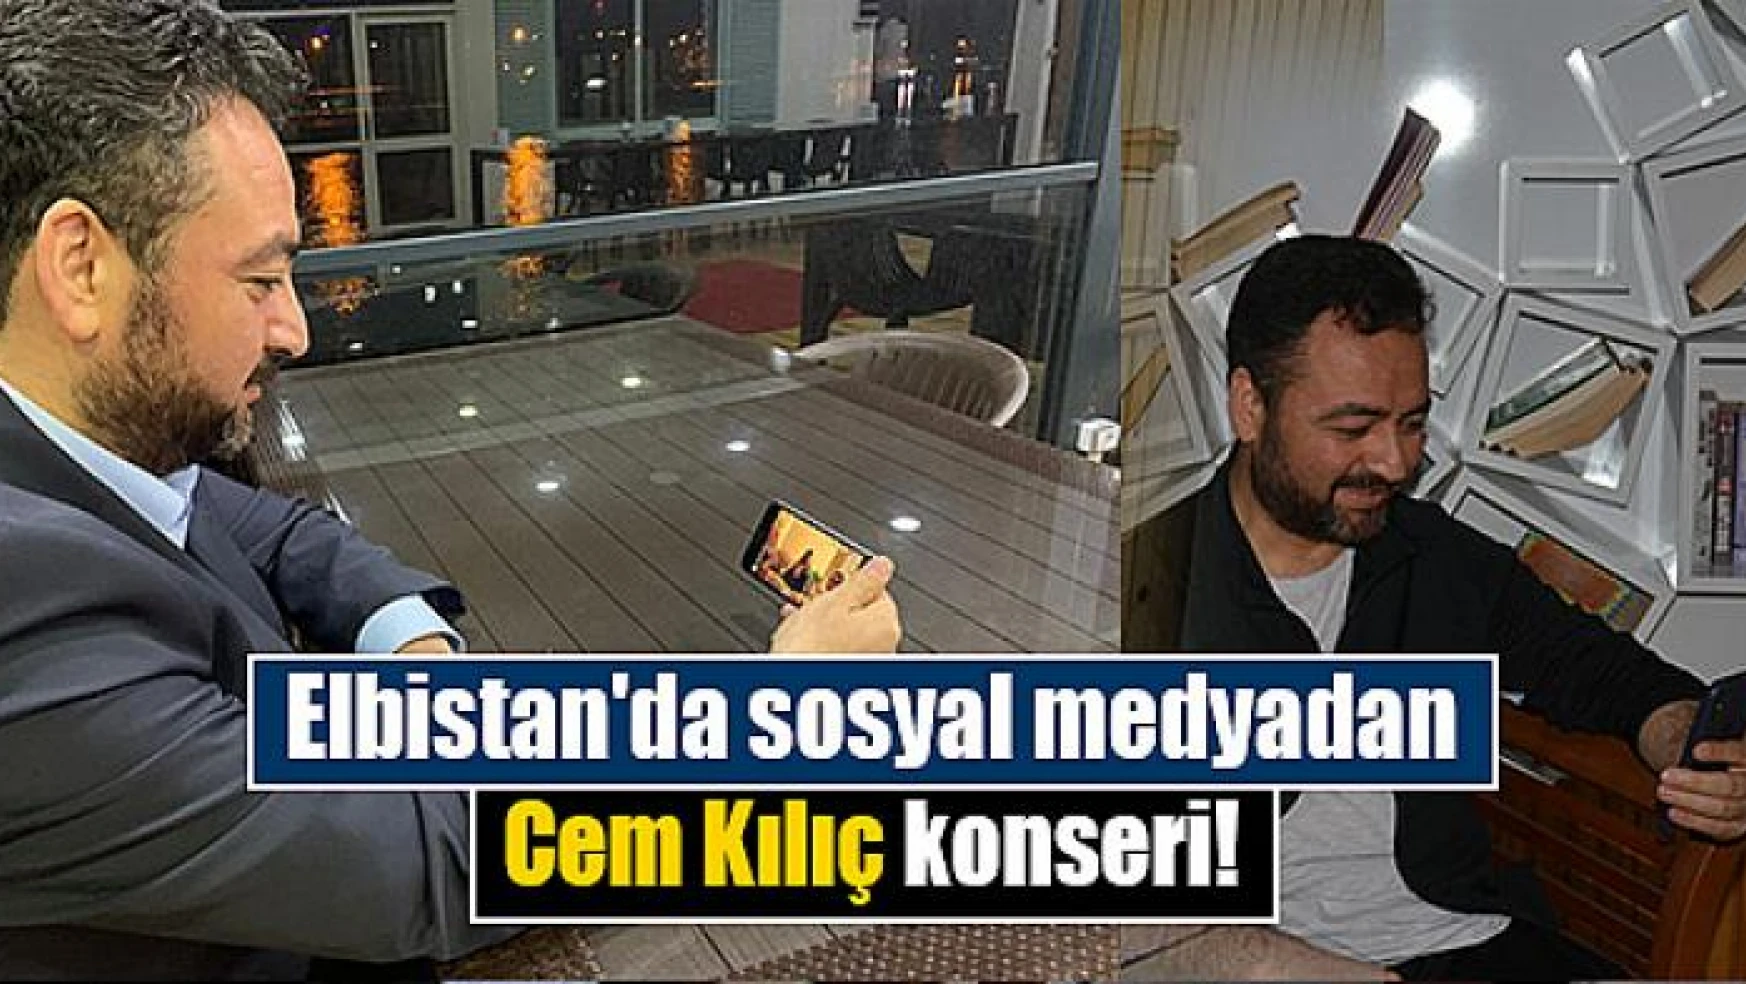 Elbistan'da sosyal medyadan Cem Kılıç konseri!